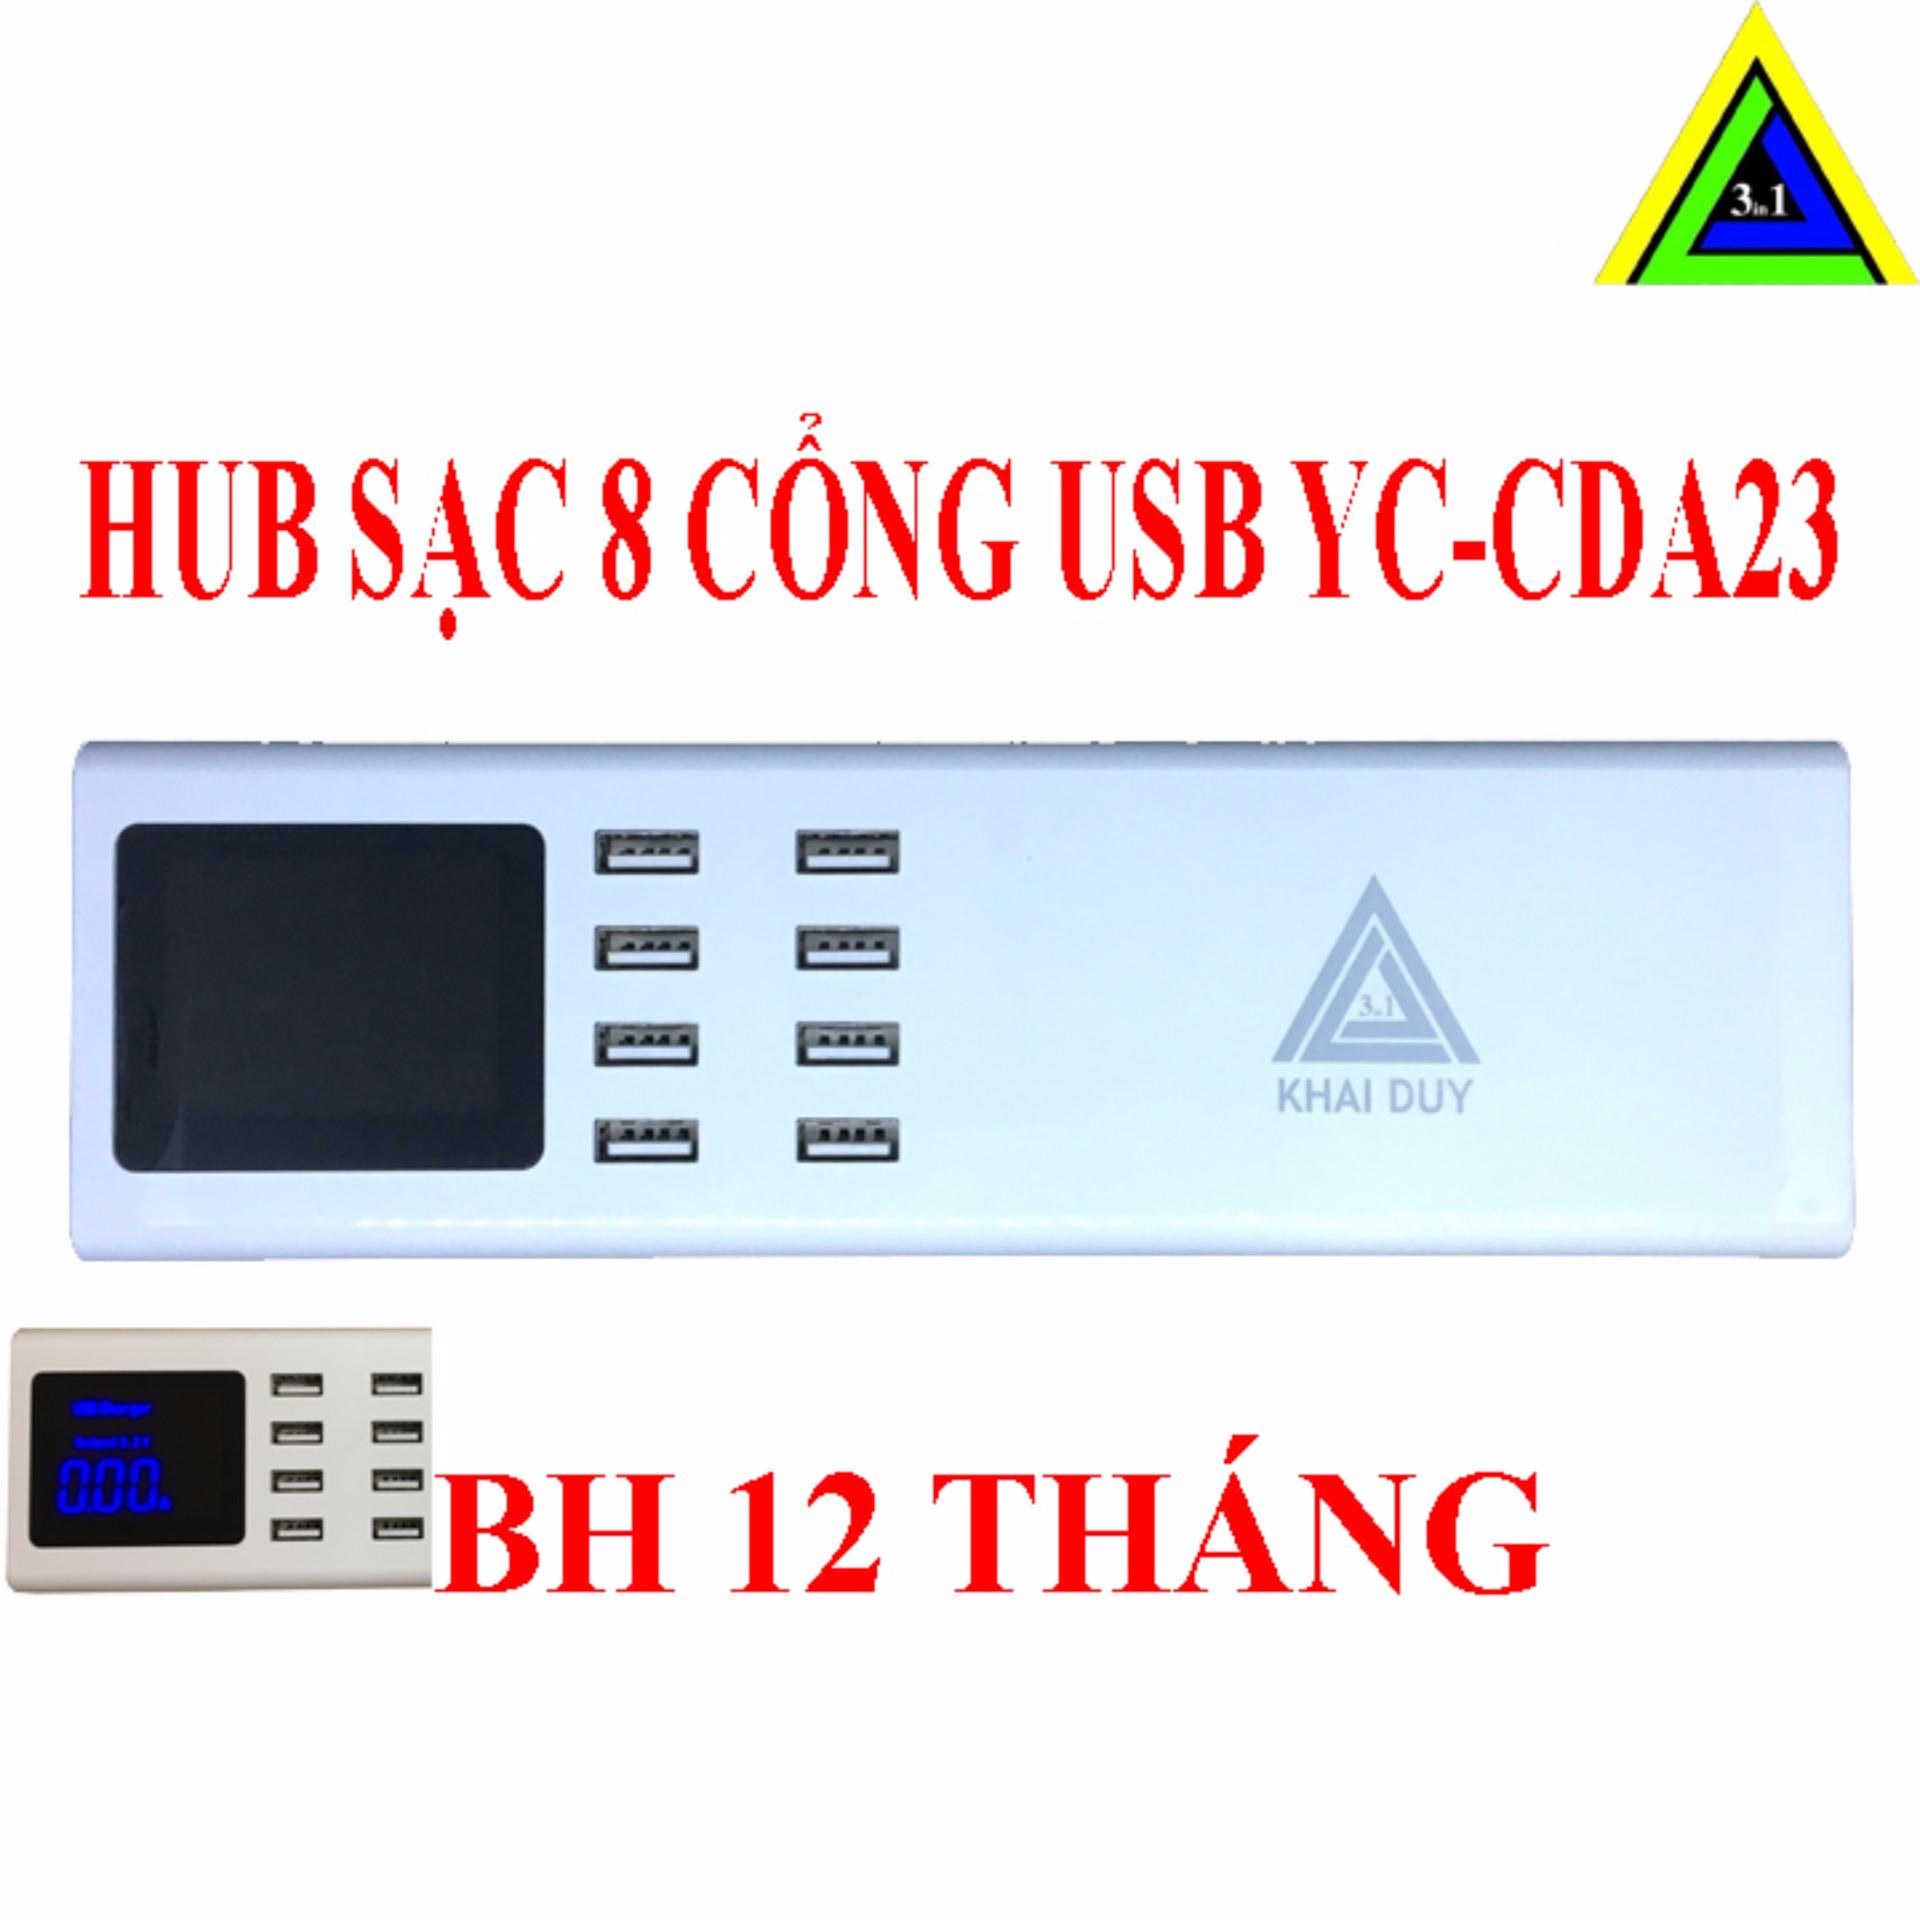 HUB SẠC USB 8 CỔNG YC-CDA23